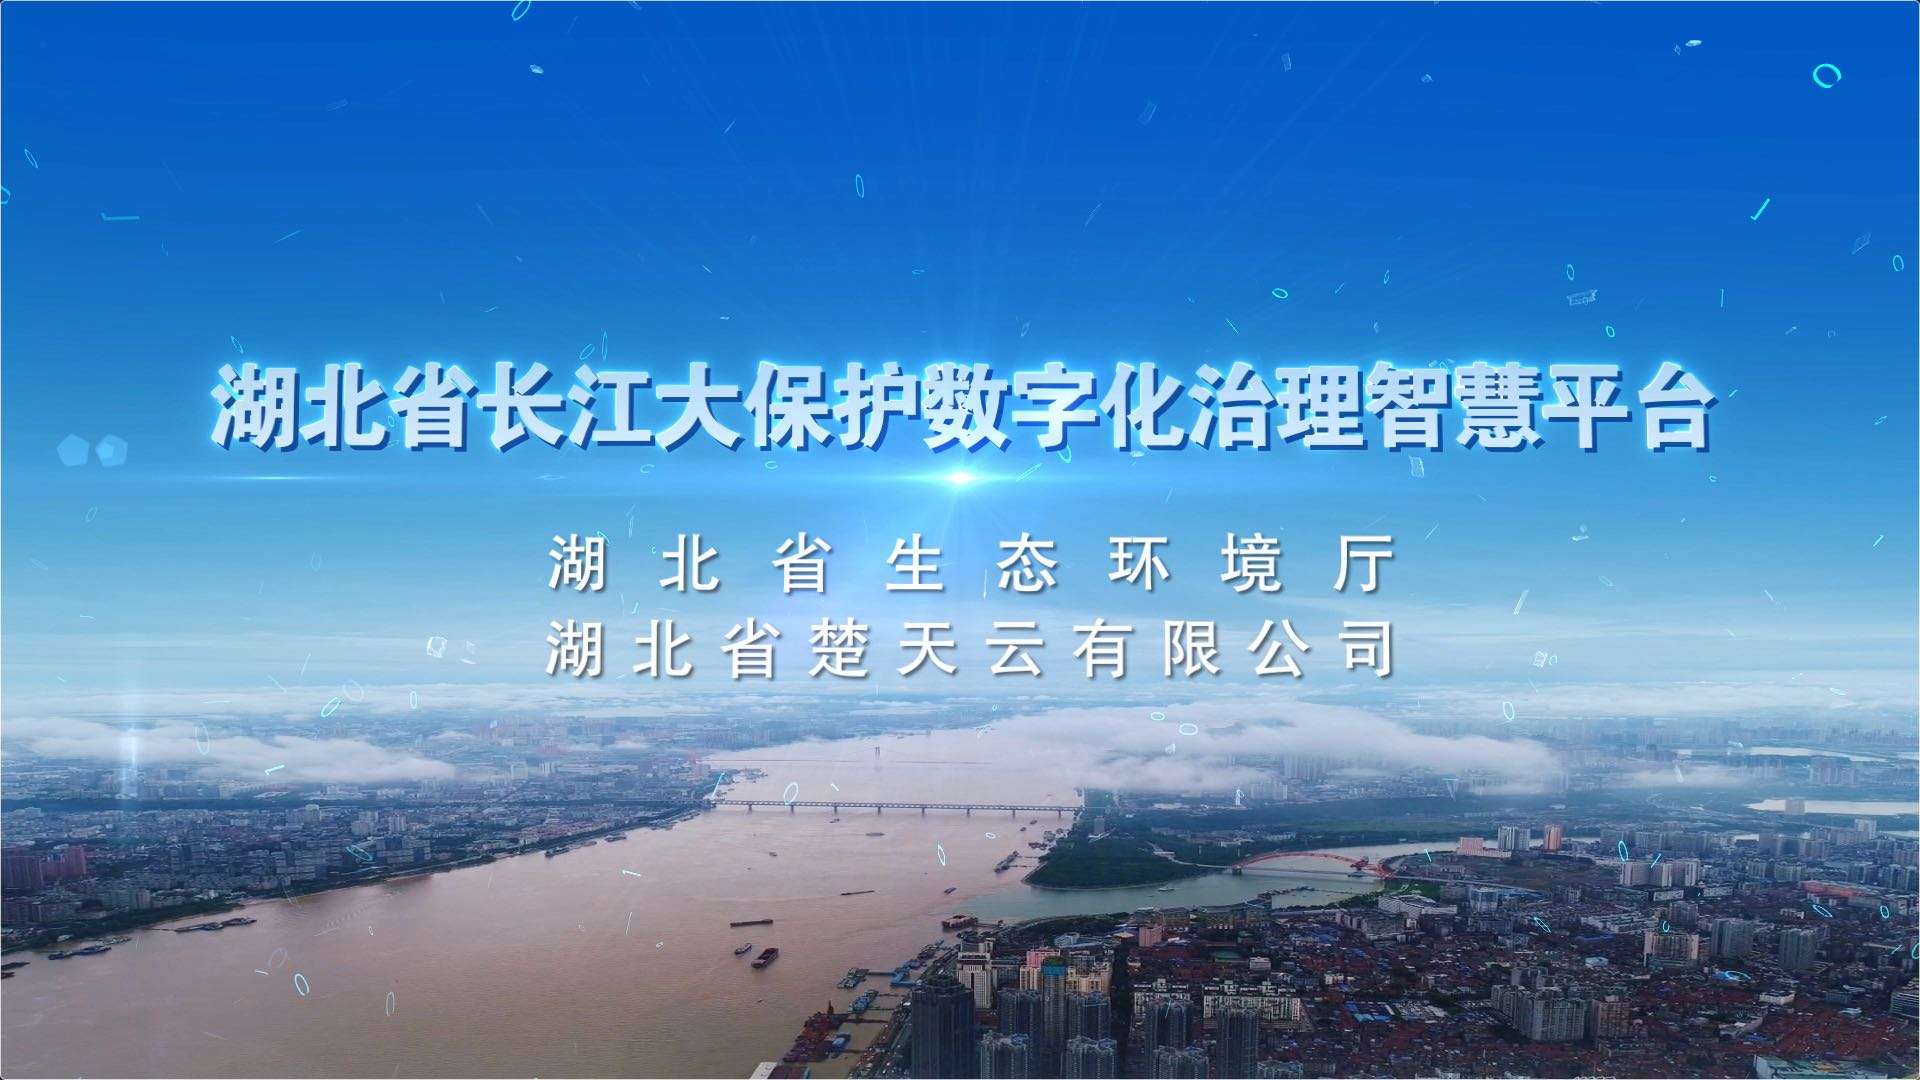 湖北省长江大保护数字化治理智慧平台宣传片